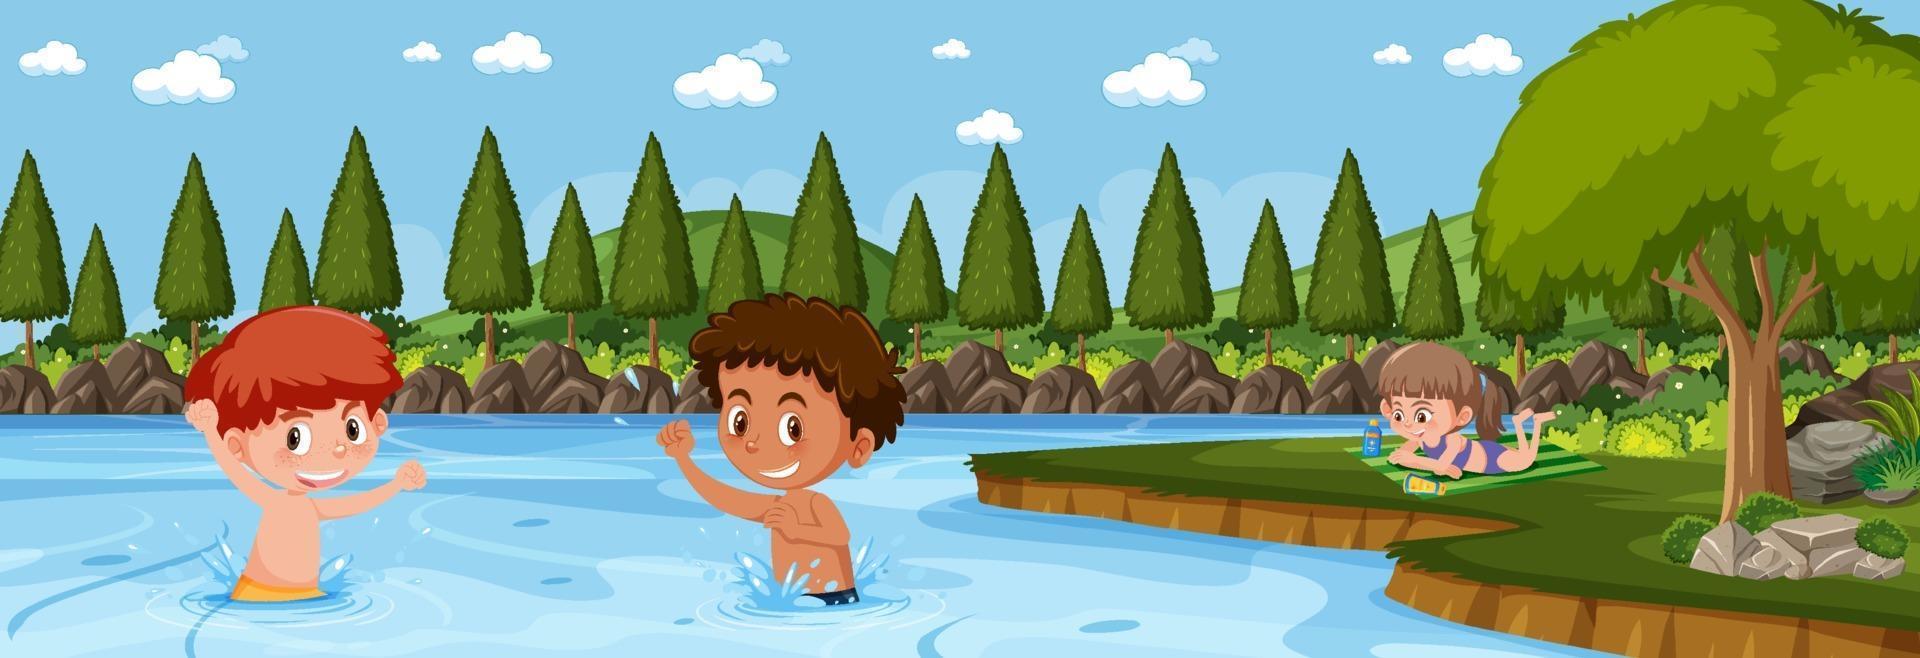 Panorama de la escena del paisaje con muchos niños nadando en el lago vector